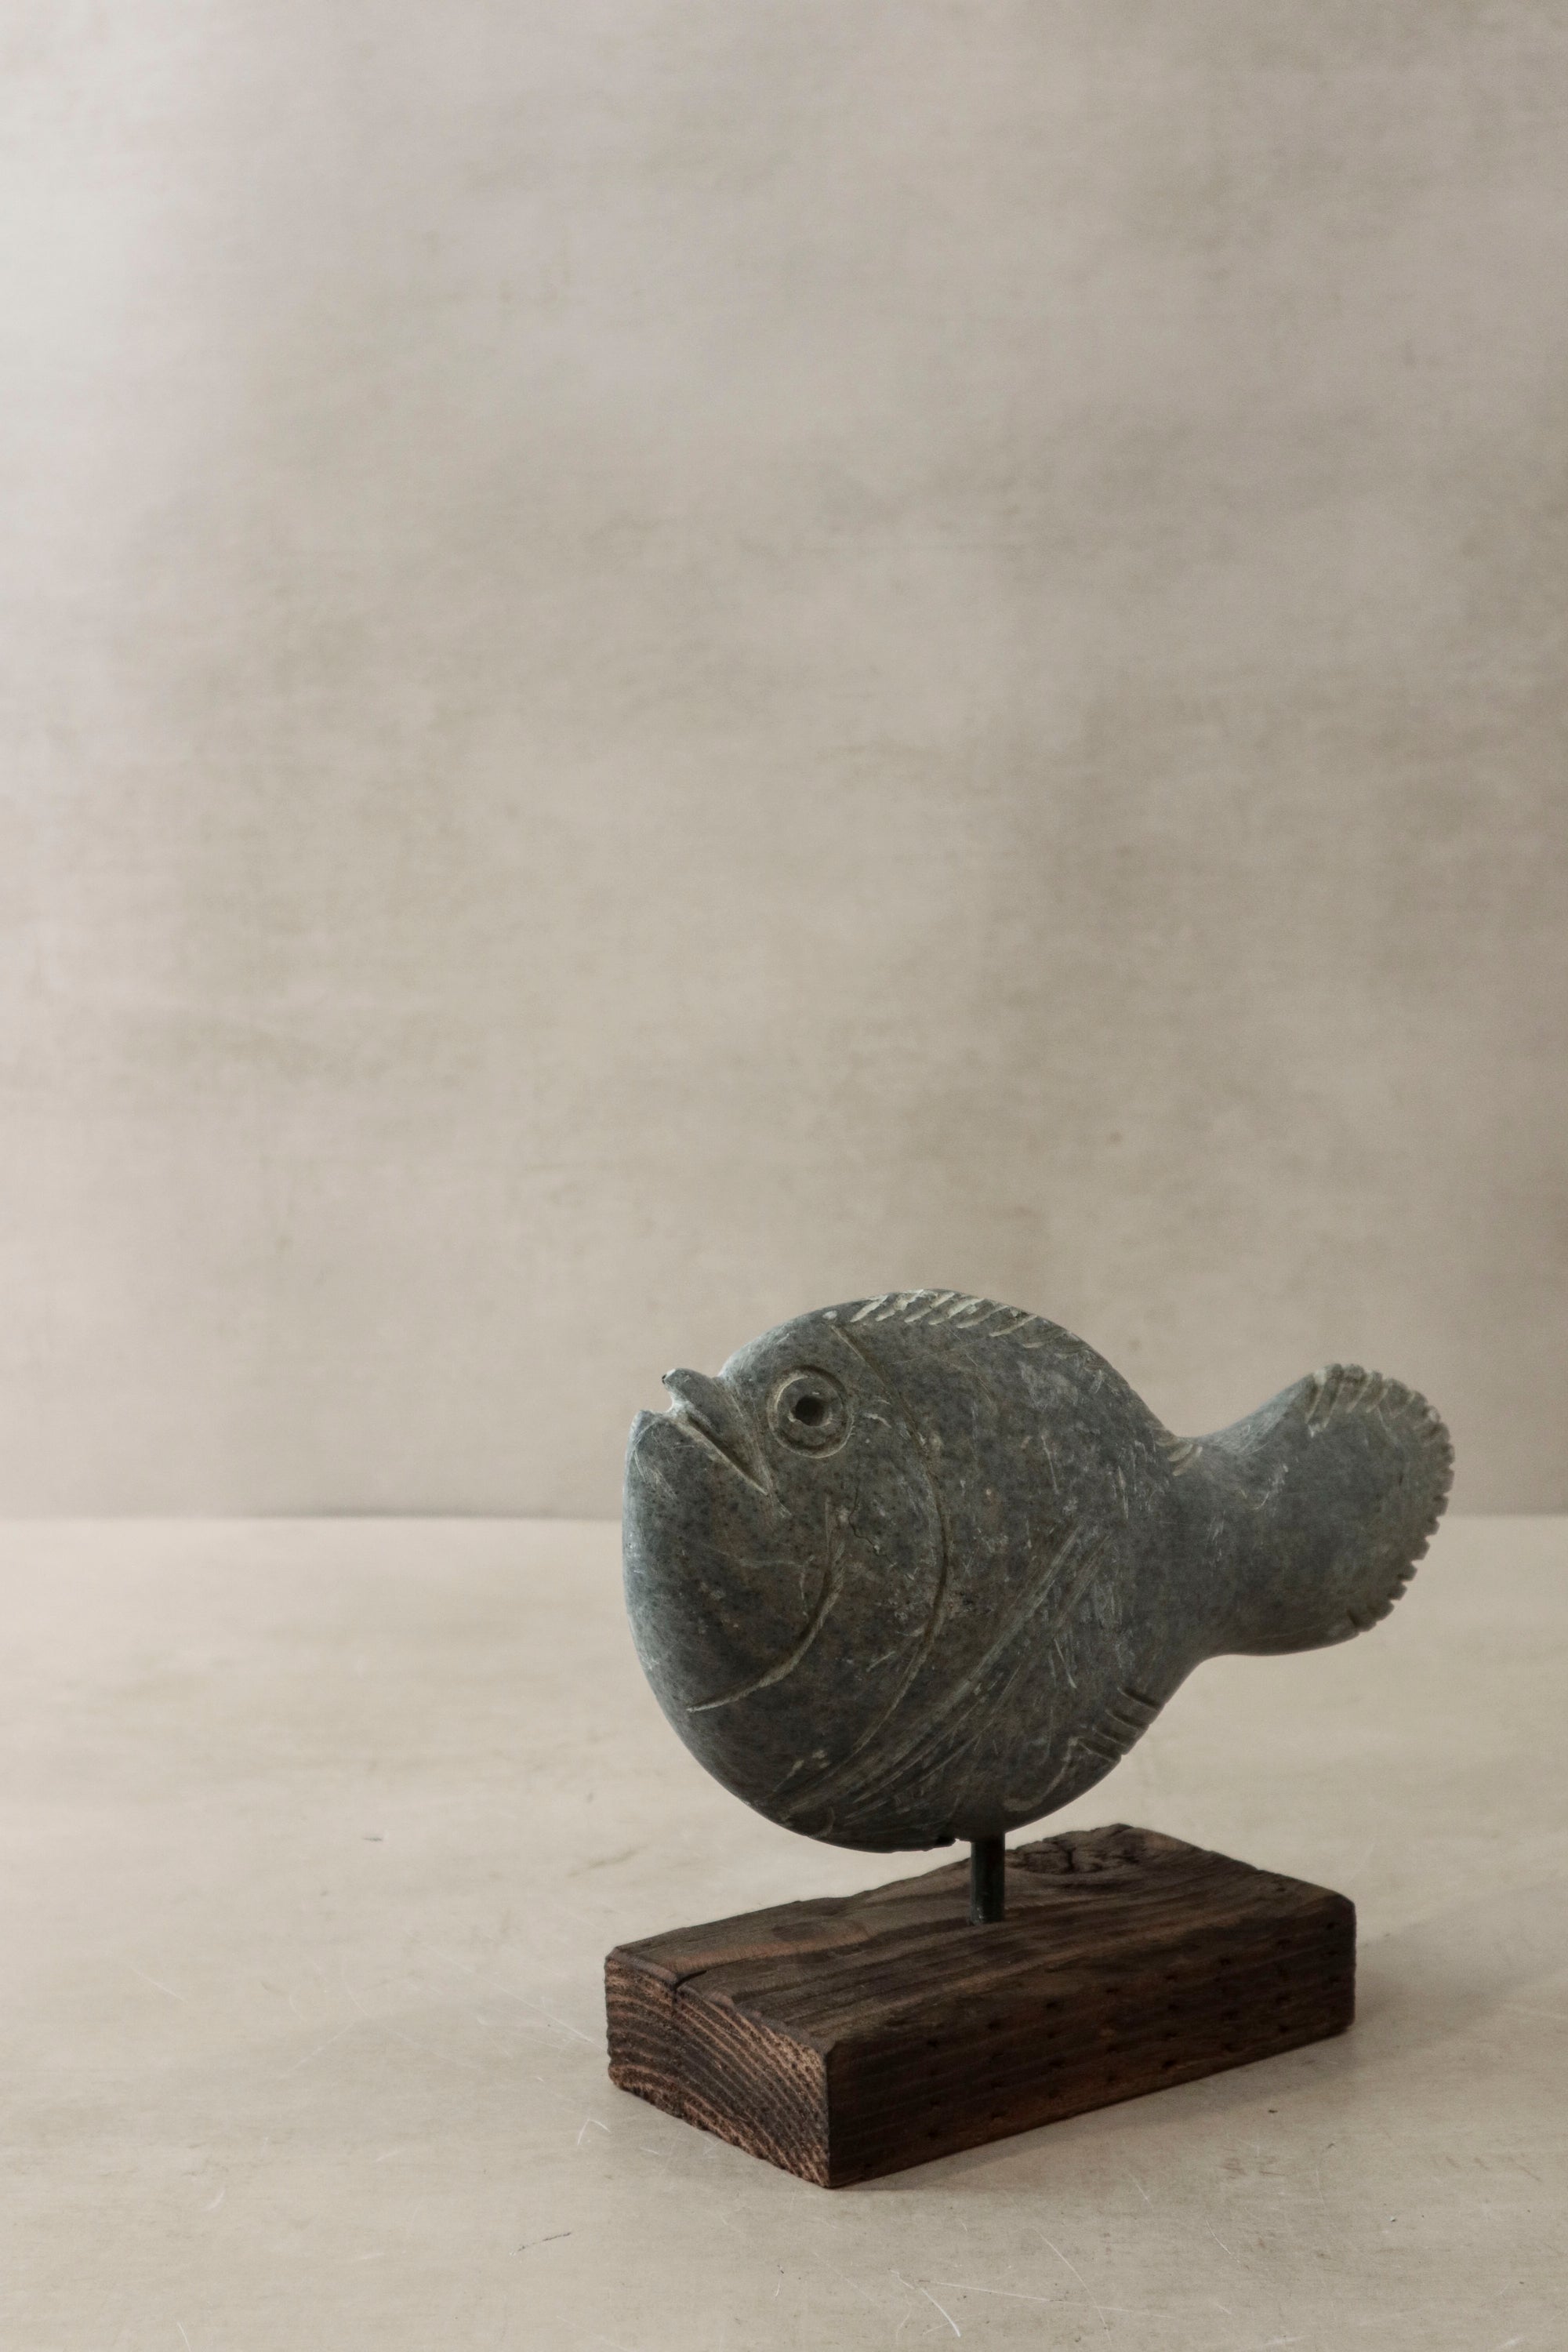 Stone Fish Sculpture - Zimbabwe - 29.1